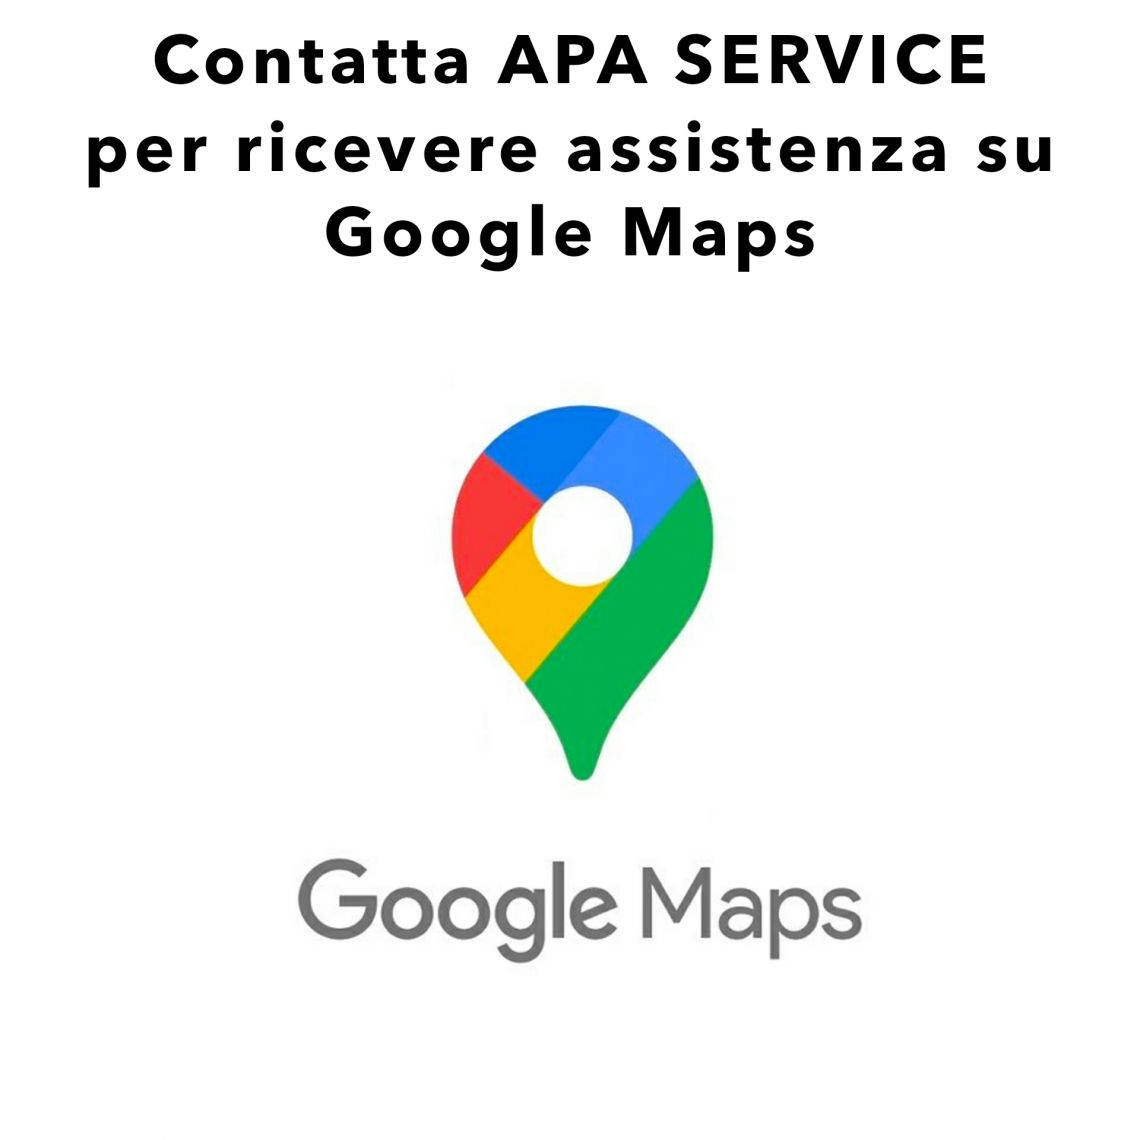 Agenzia Web per assistenza Google Maps contatta Apa Service